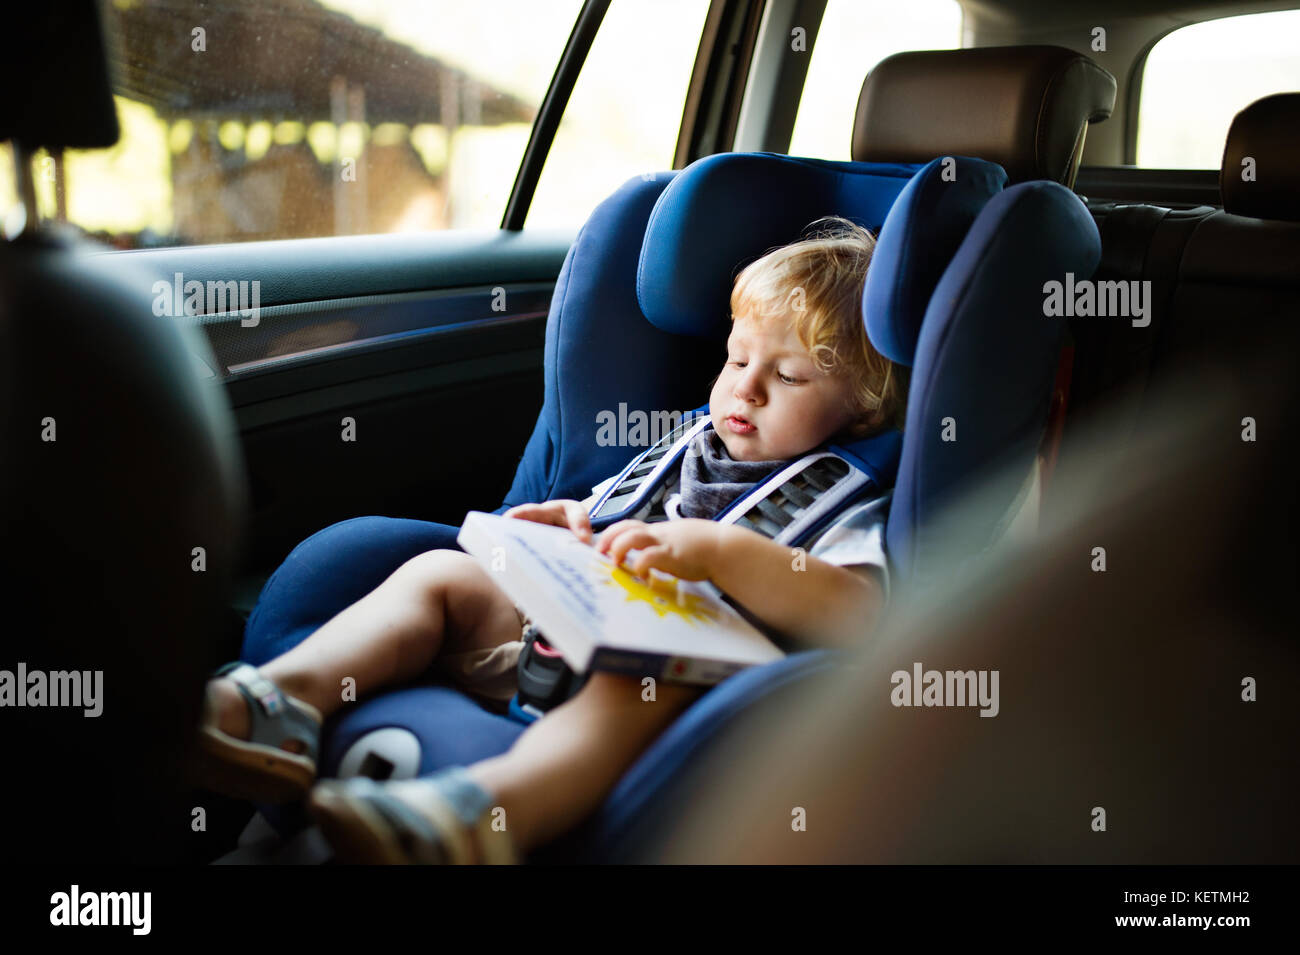 Petit garçon assis dans le siège auto dans la voiture, tenant un livre. Banque D'Images